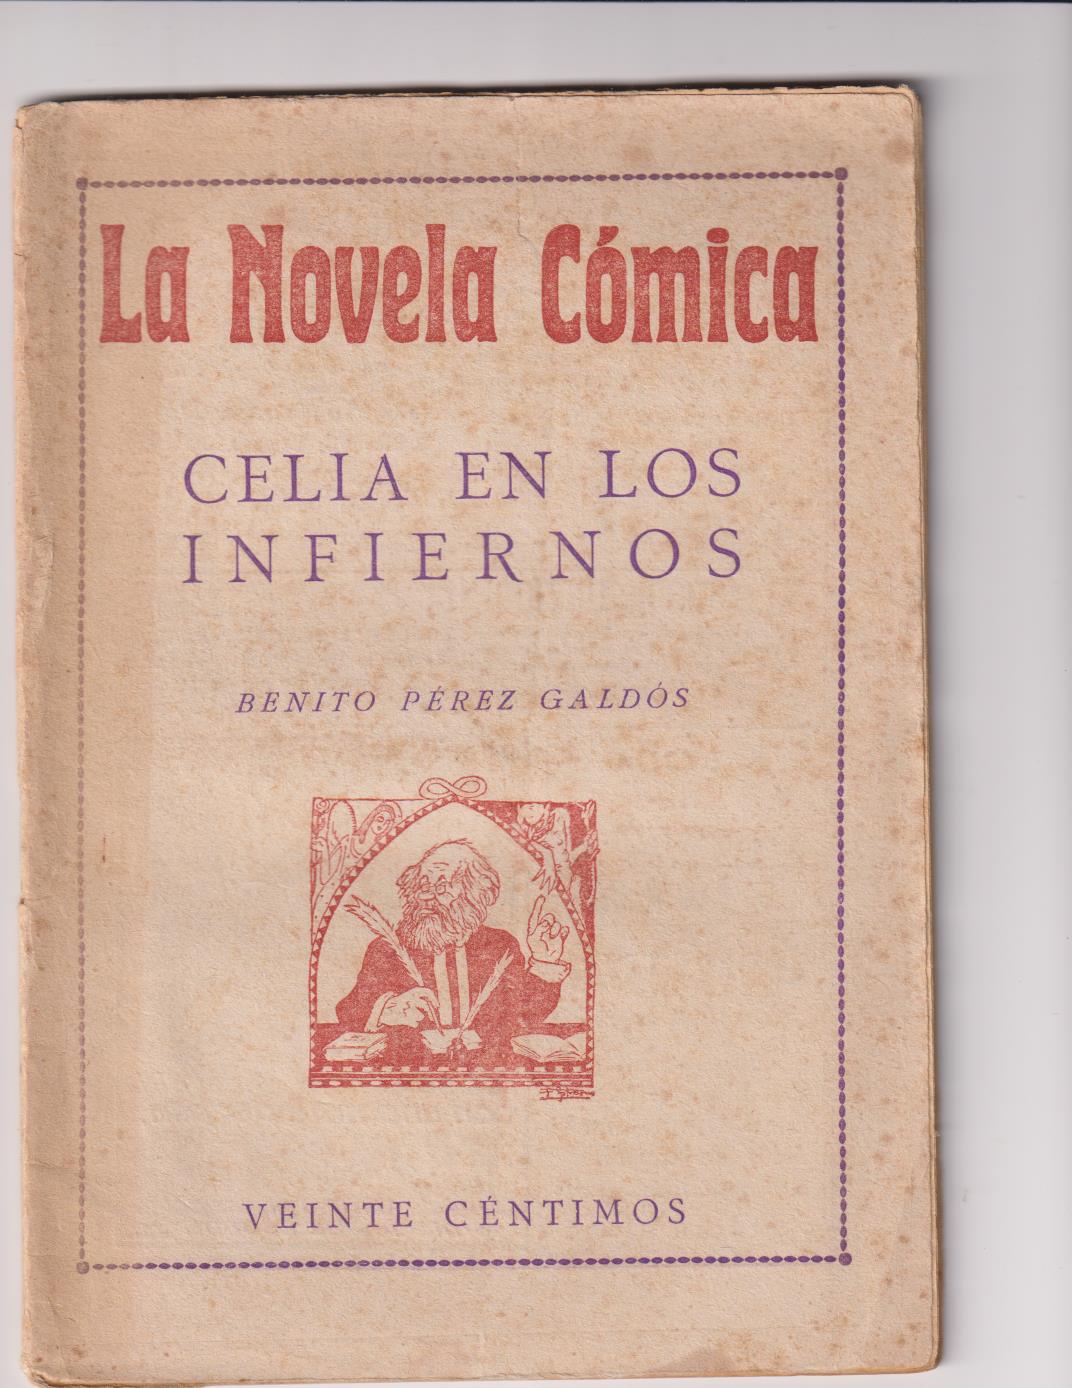 La Novela Cómica nº 15. Celia en los infiernos por Benito Pérez. Año 1916